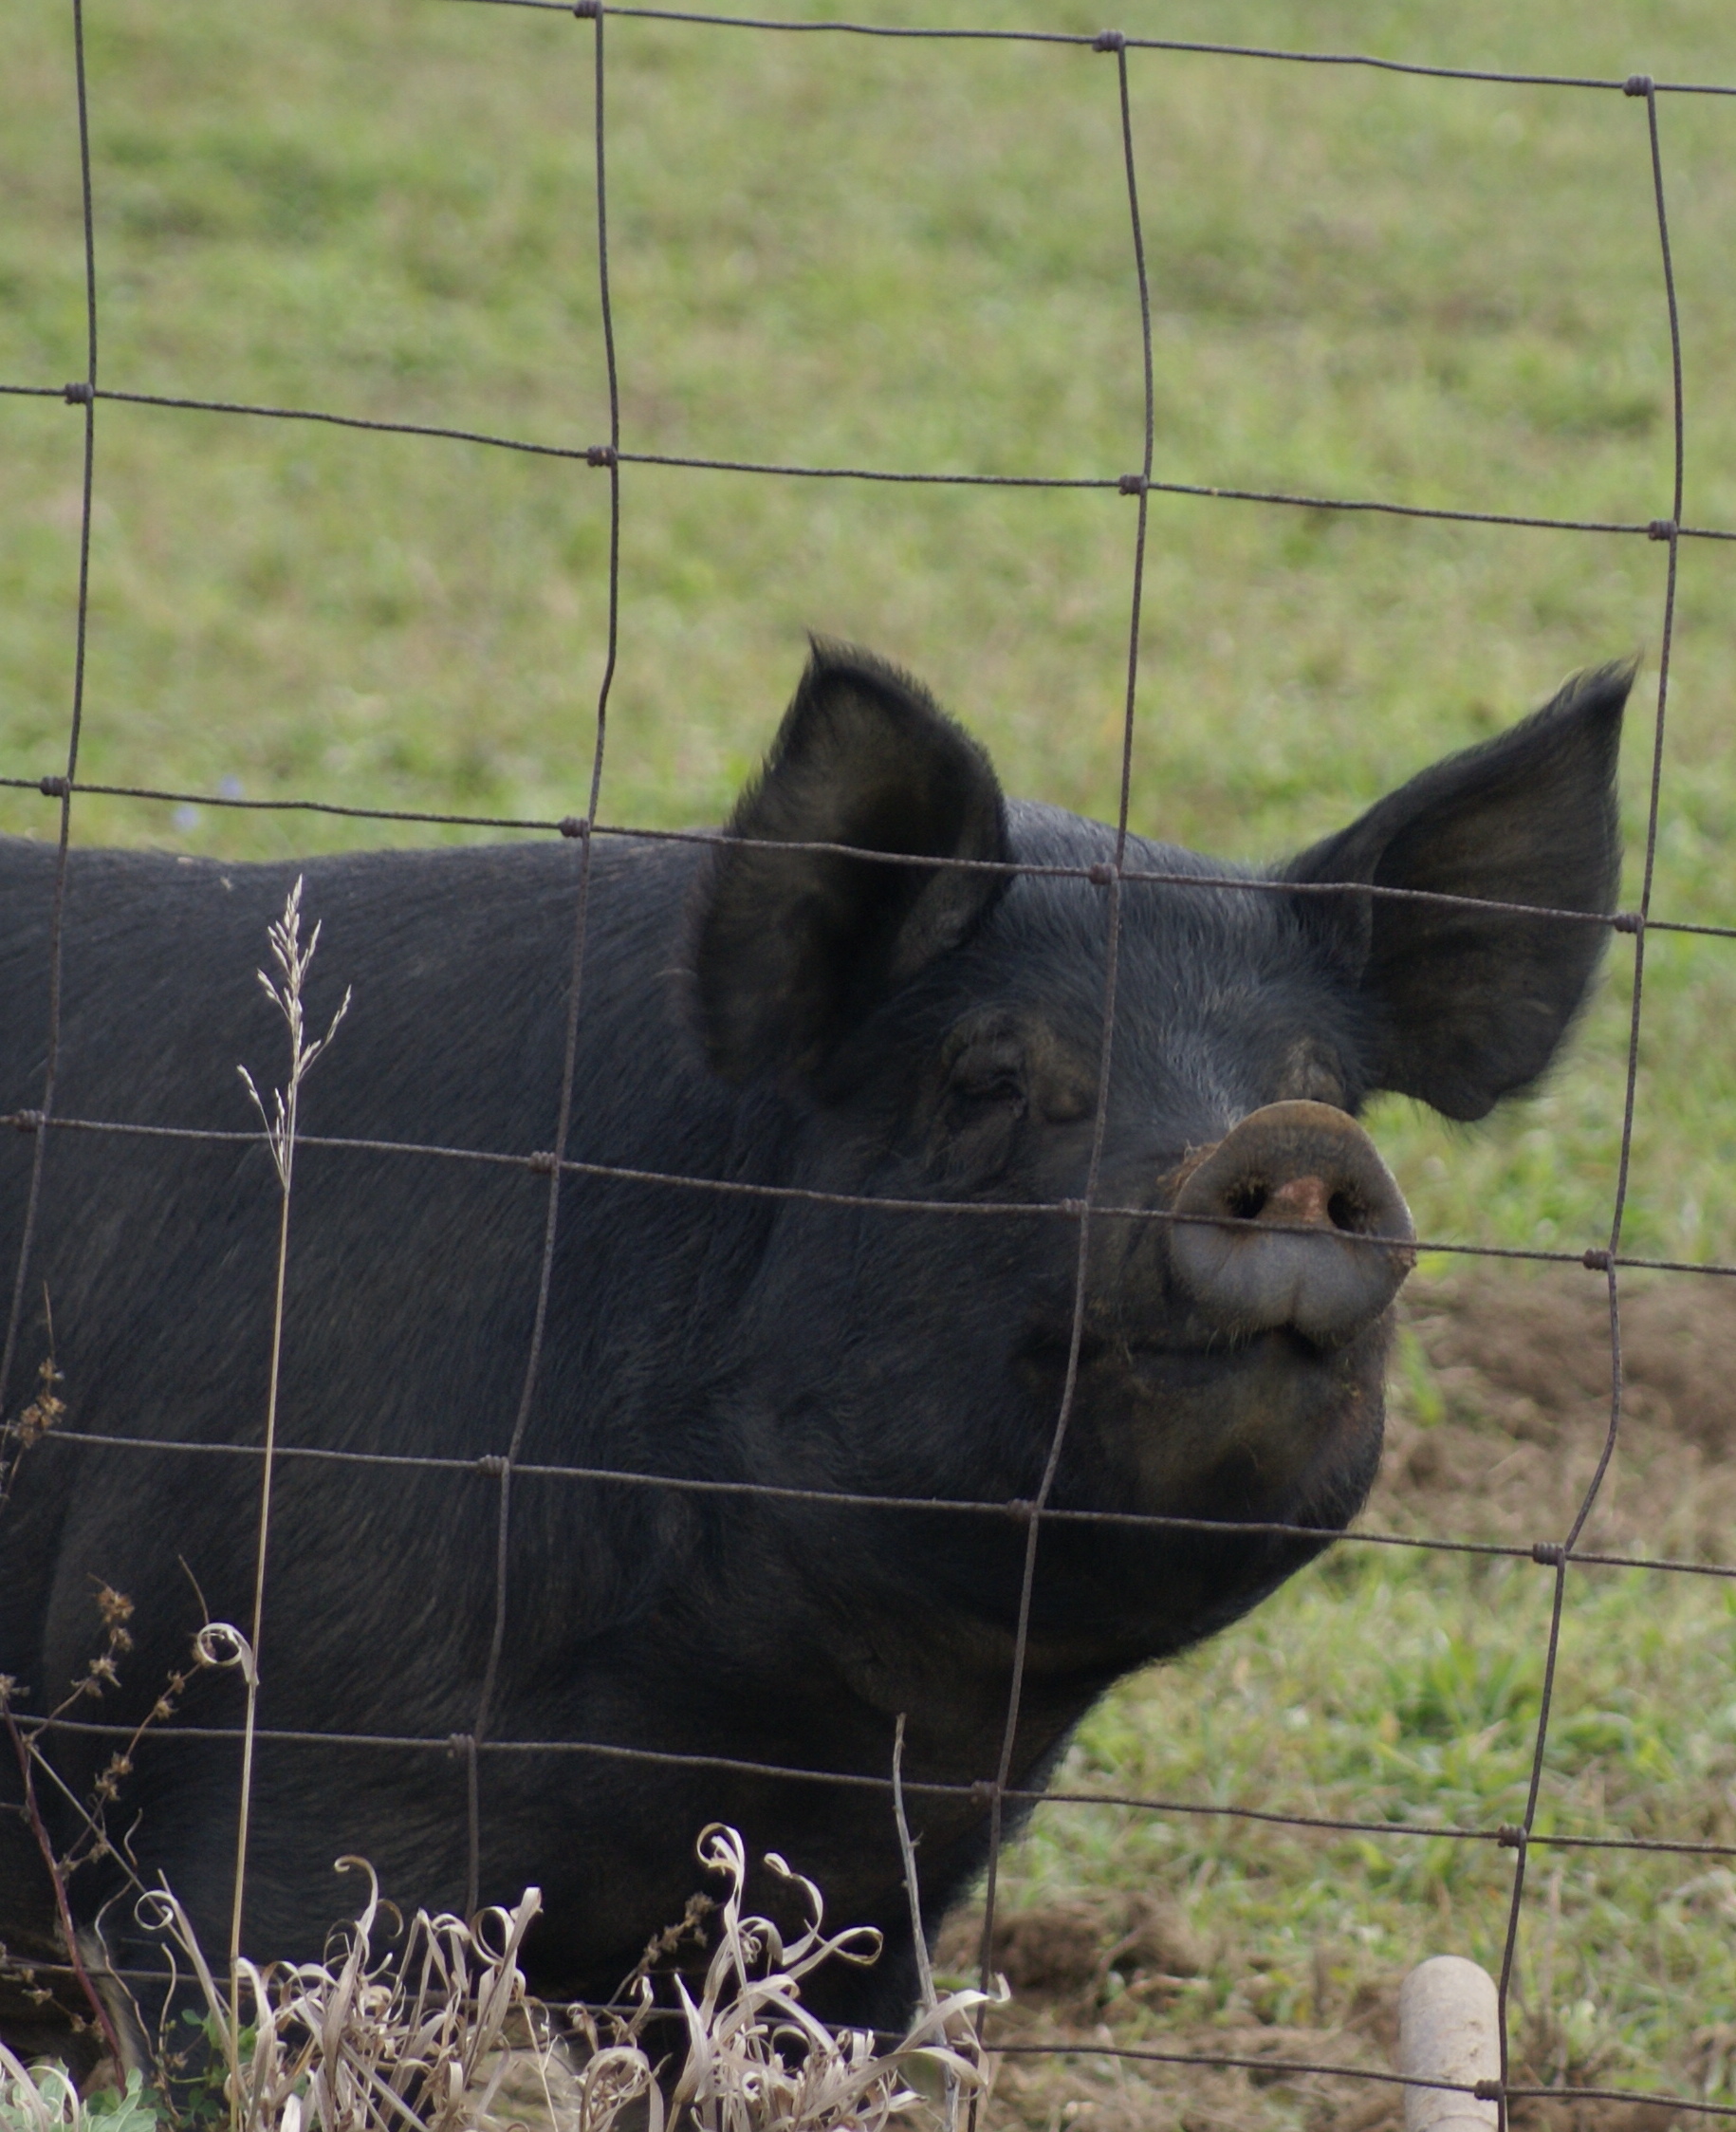 "Camera Hog", central Indiana.